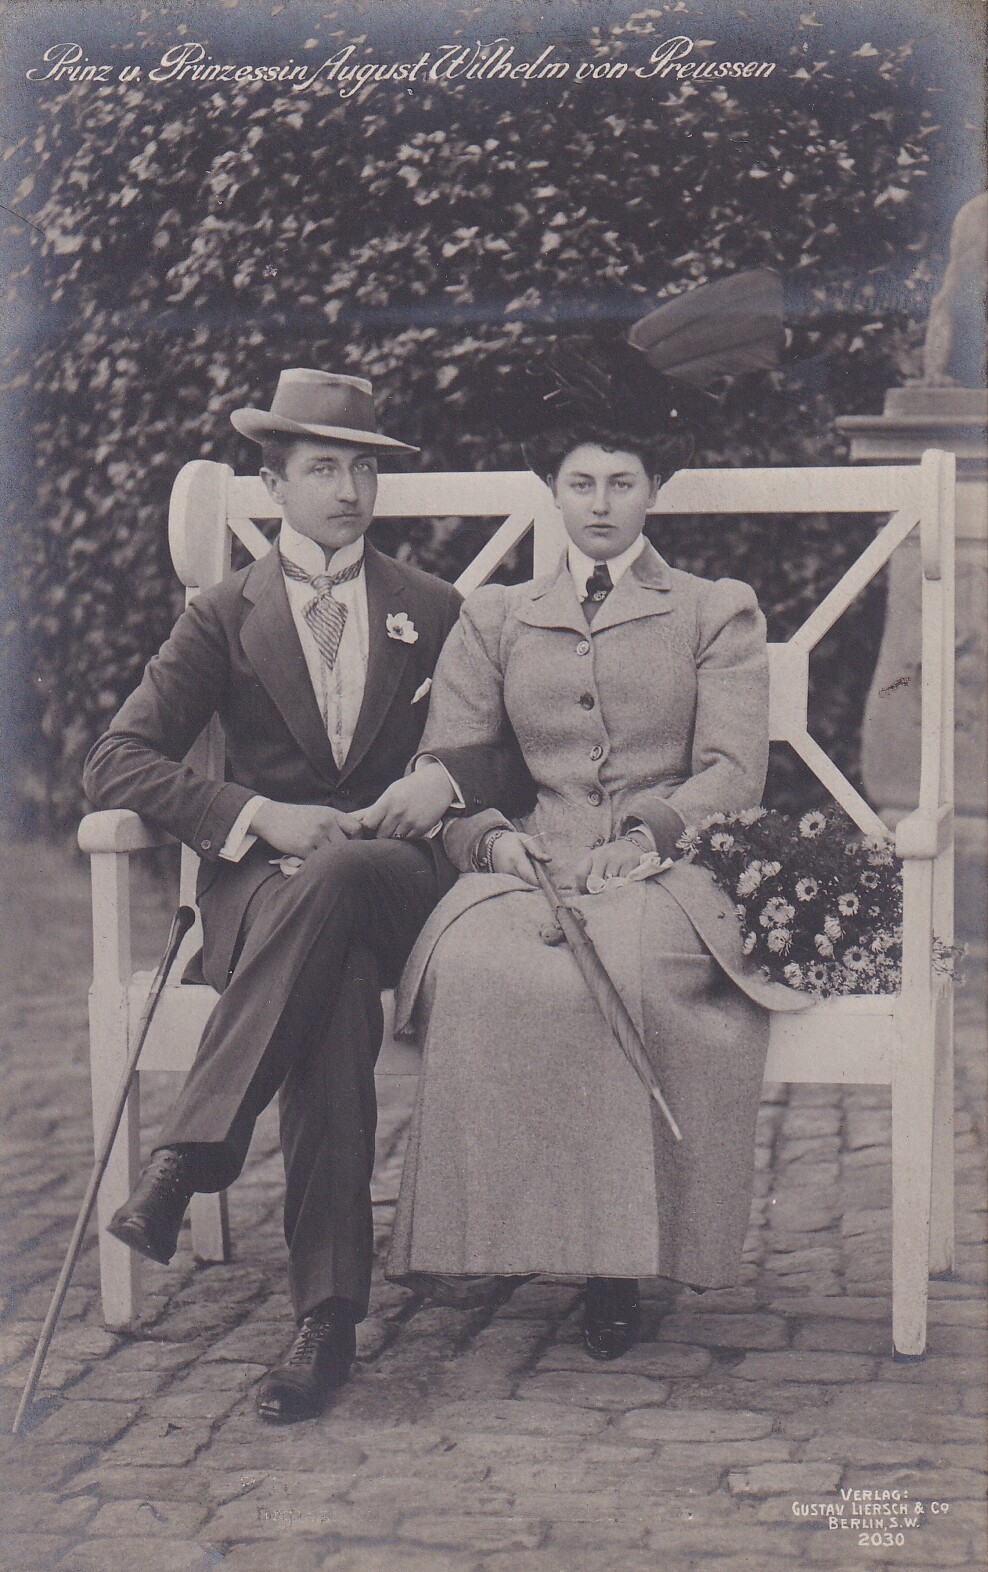 Bildpostkarte mit Porträtfoto von Prinz August Wilhelm von Preußen (1887-1949) mit Frau, 1908 (Schloß Wernigerode GmbH RR-F)